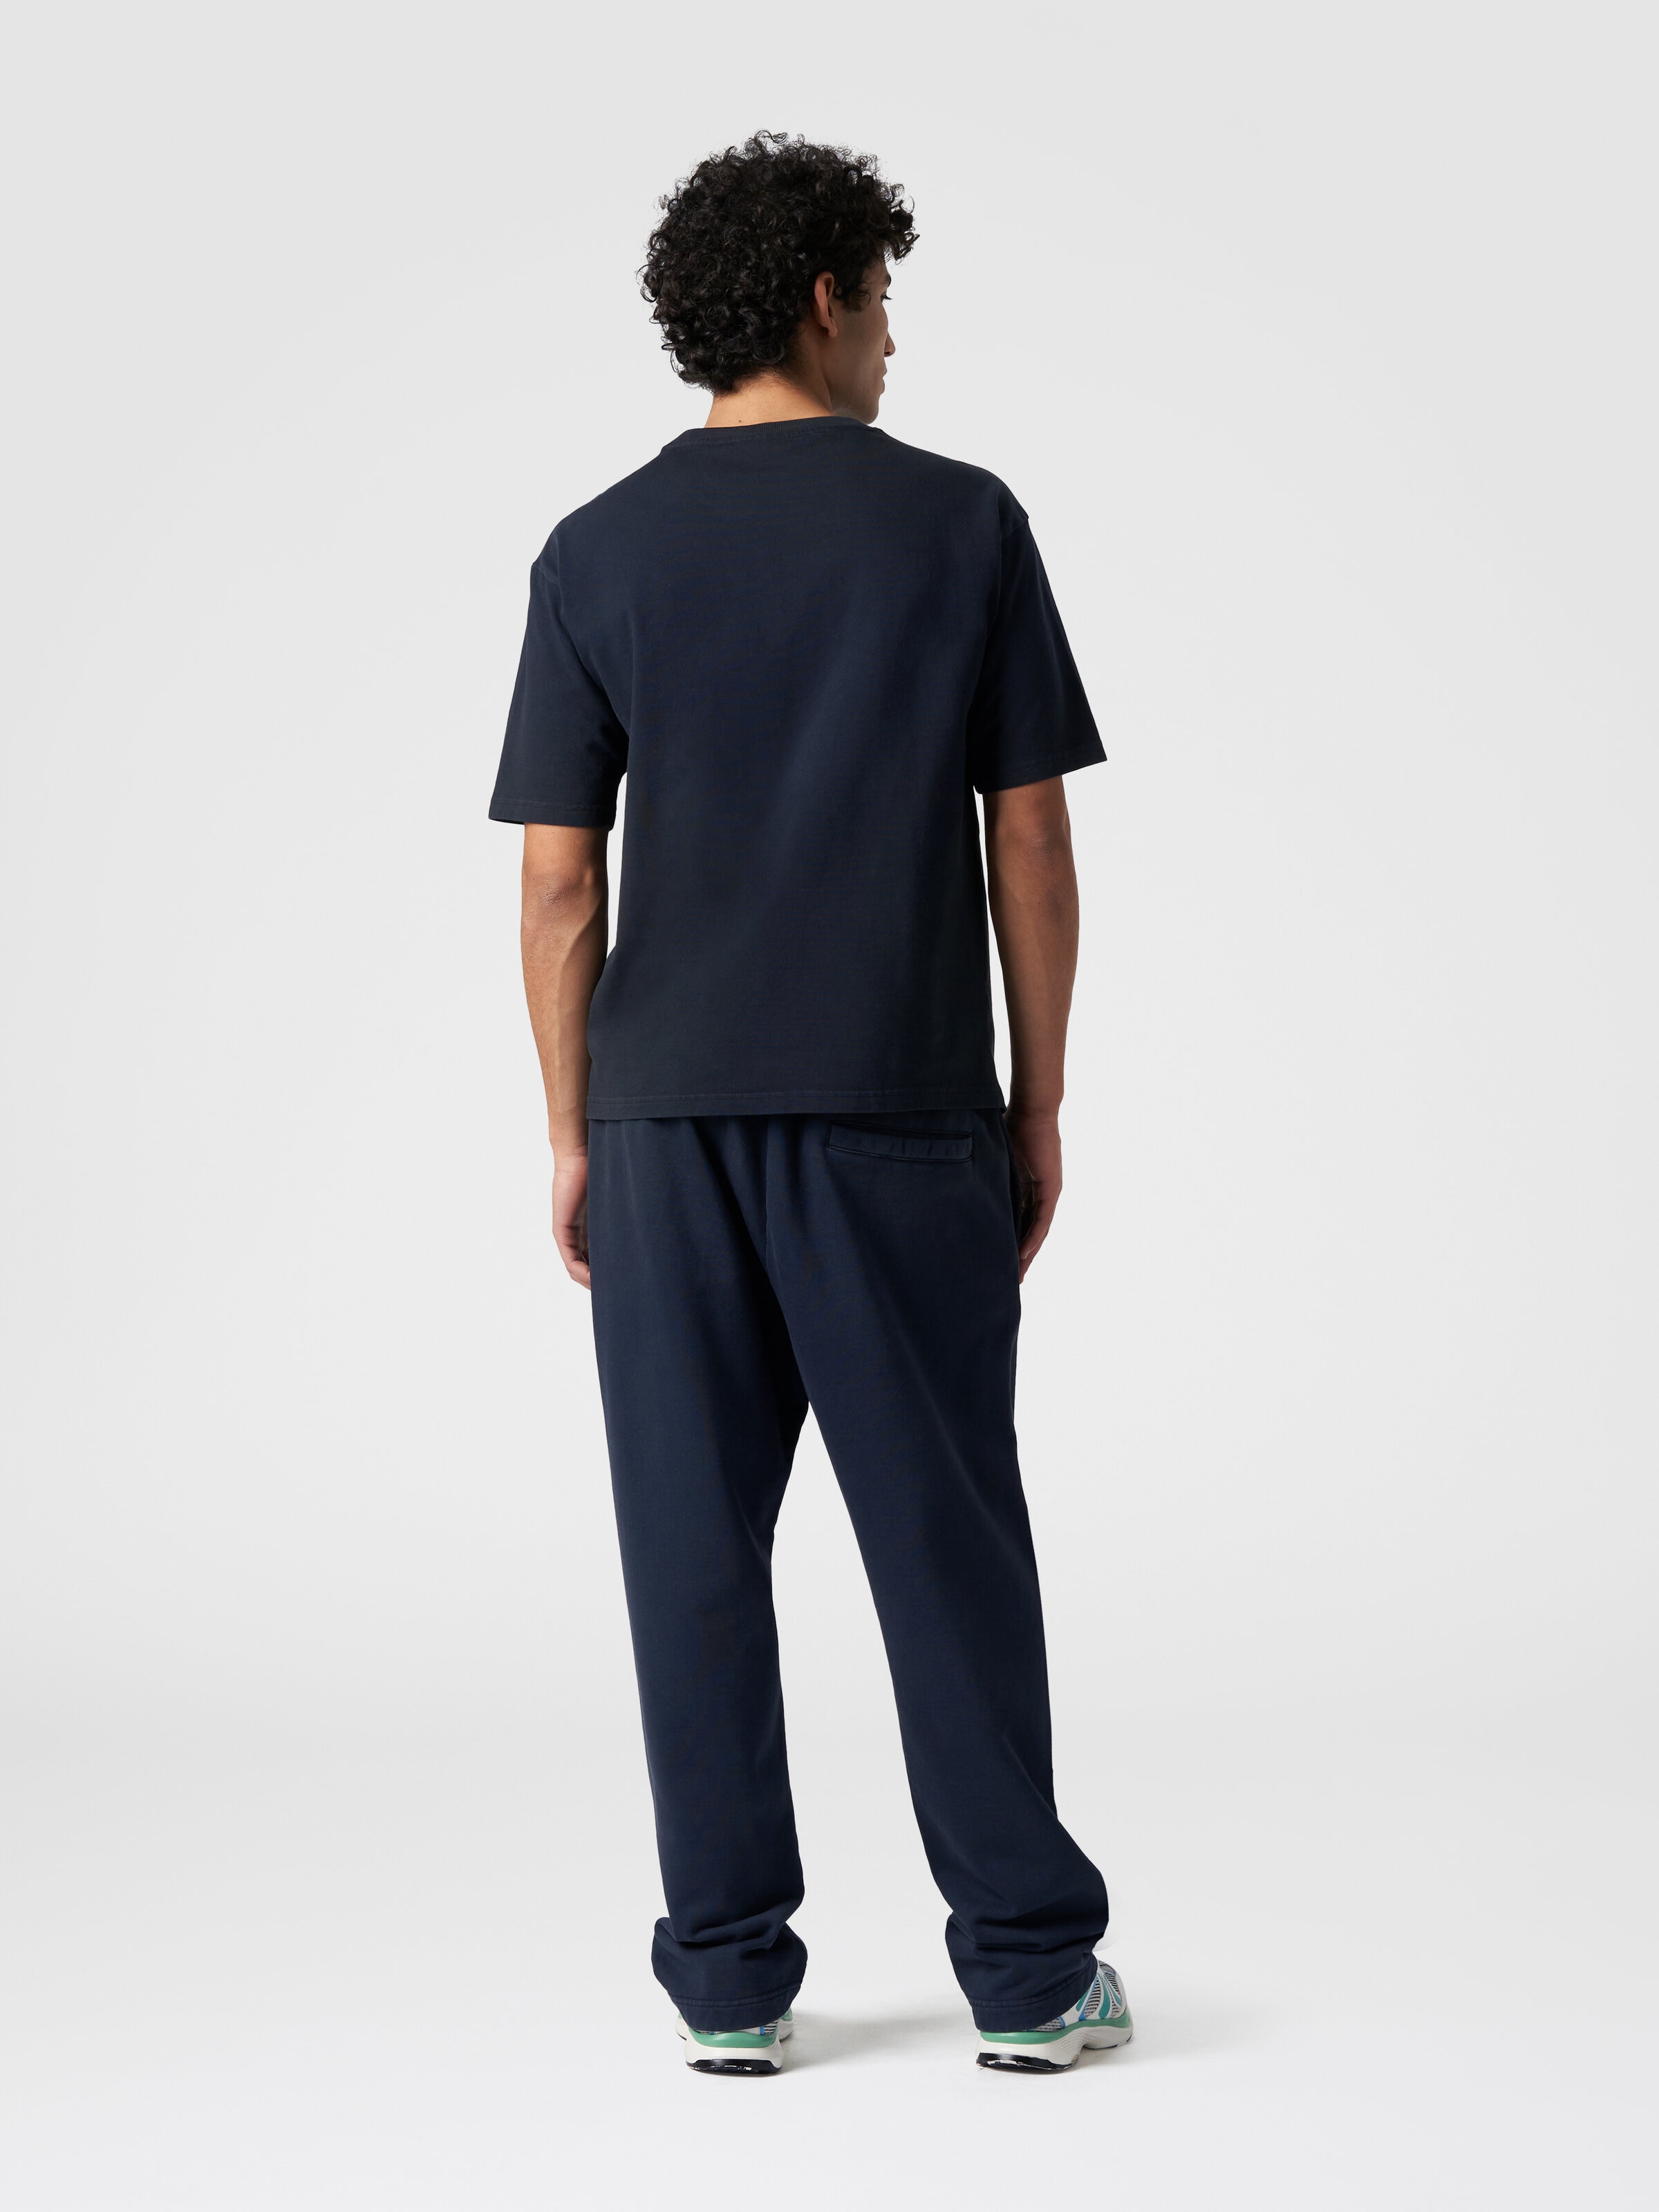 Camiseta de cuello redondo de algodón con logotipo, Azul Marino  - 2